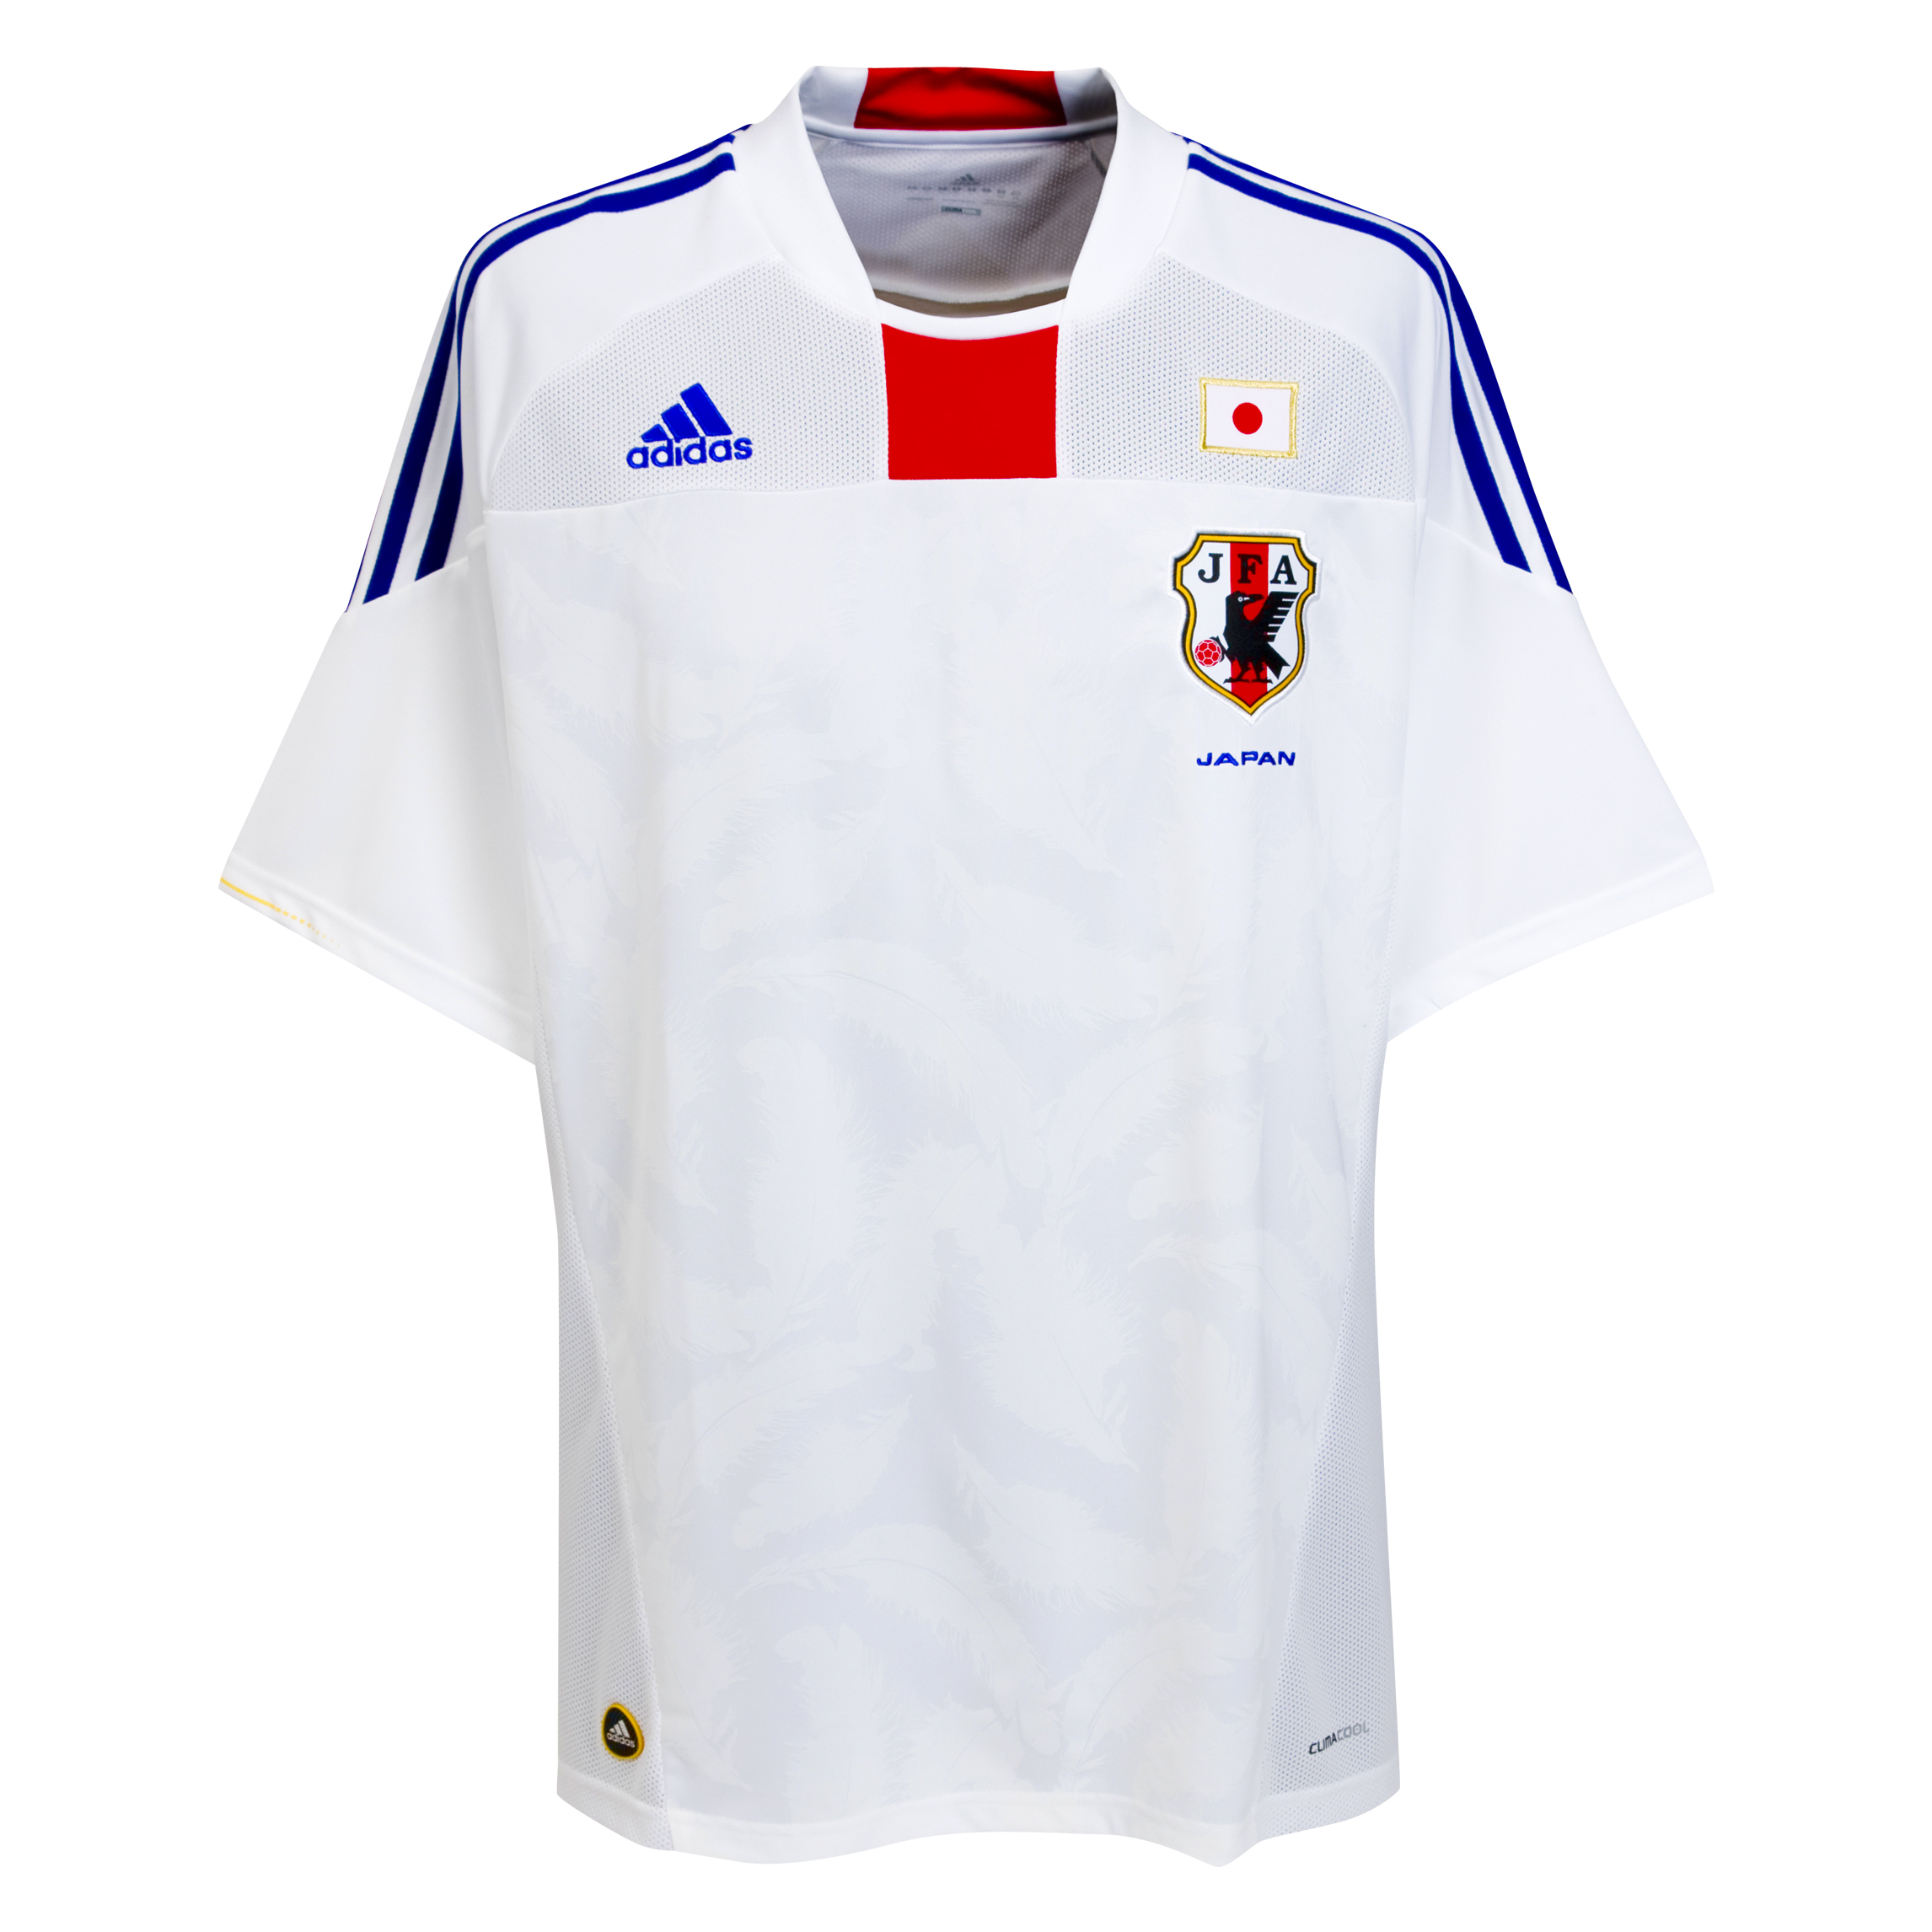 .¸-(_ (قمصان جميع المنتخبات لكأس العالم 2010) _)-,. Kb-66941